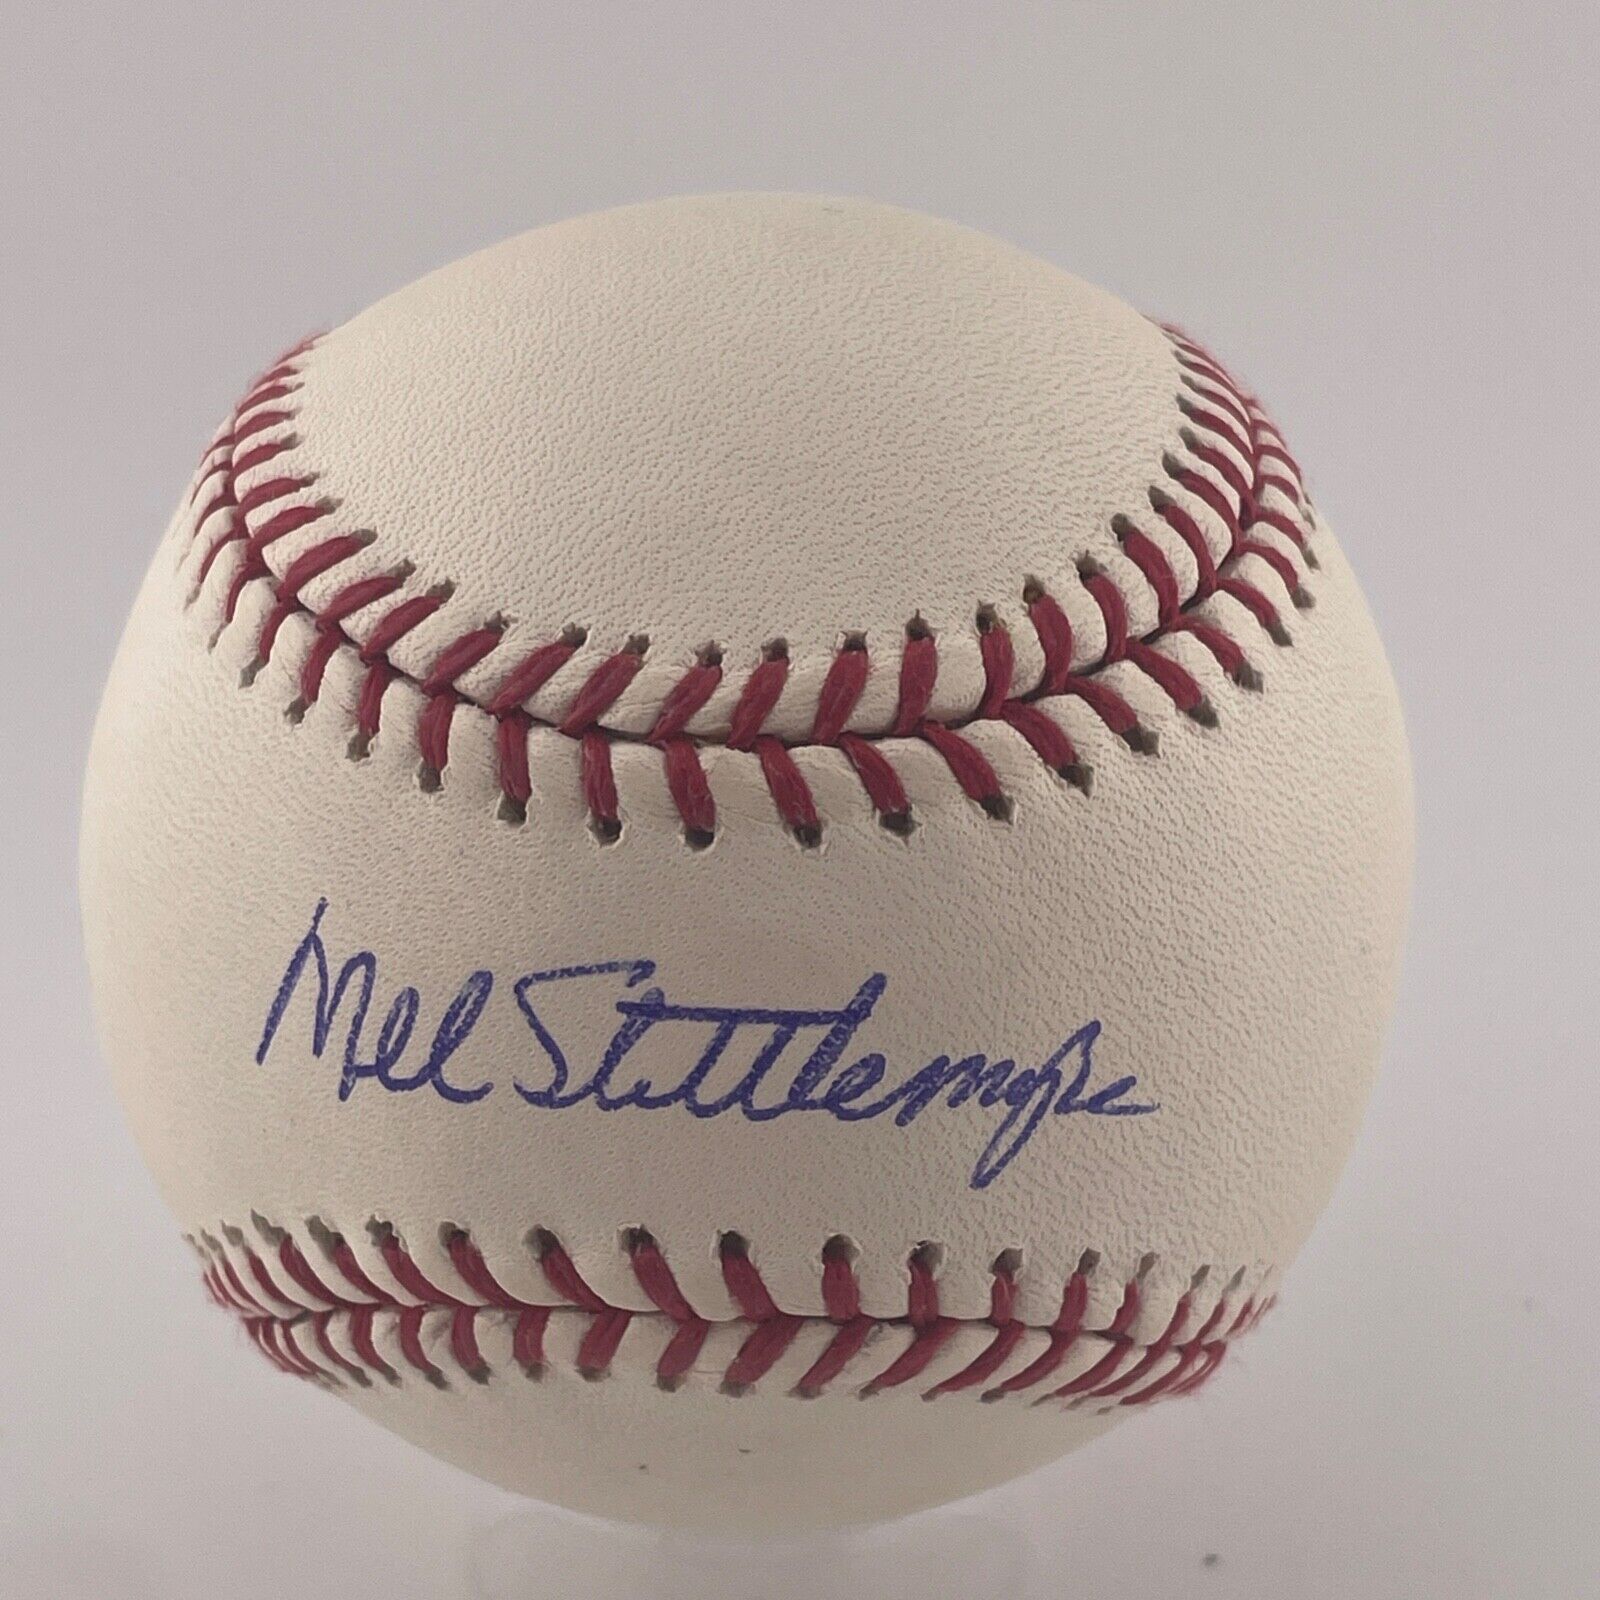 Mel Stottlemyre Signed Baseball. New York Yankees. JSA